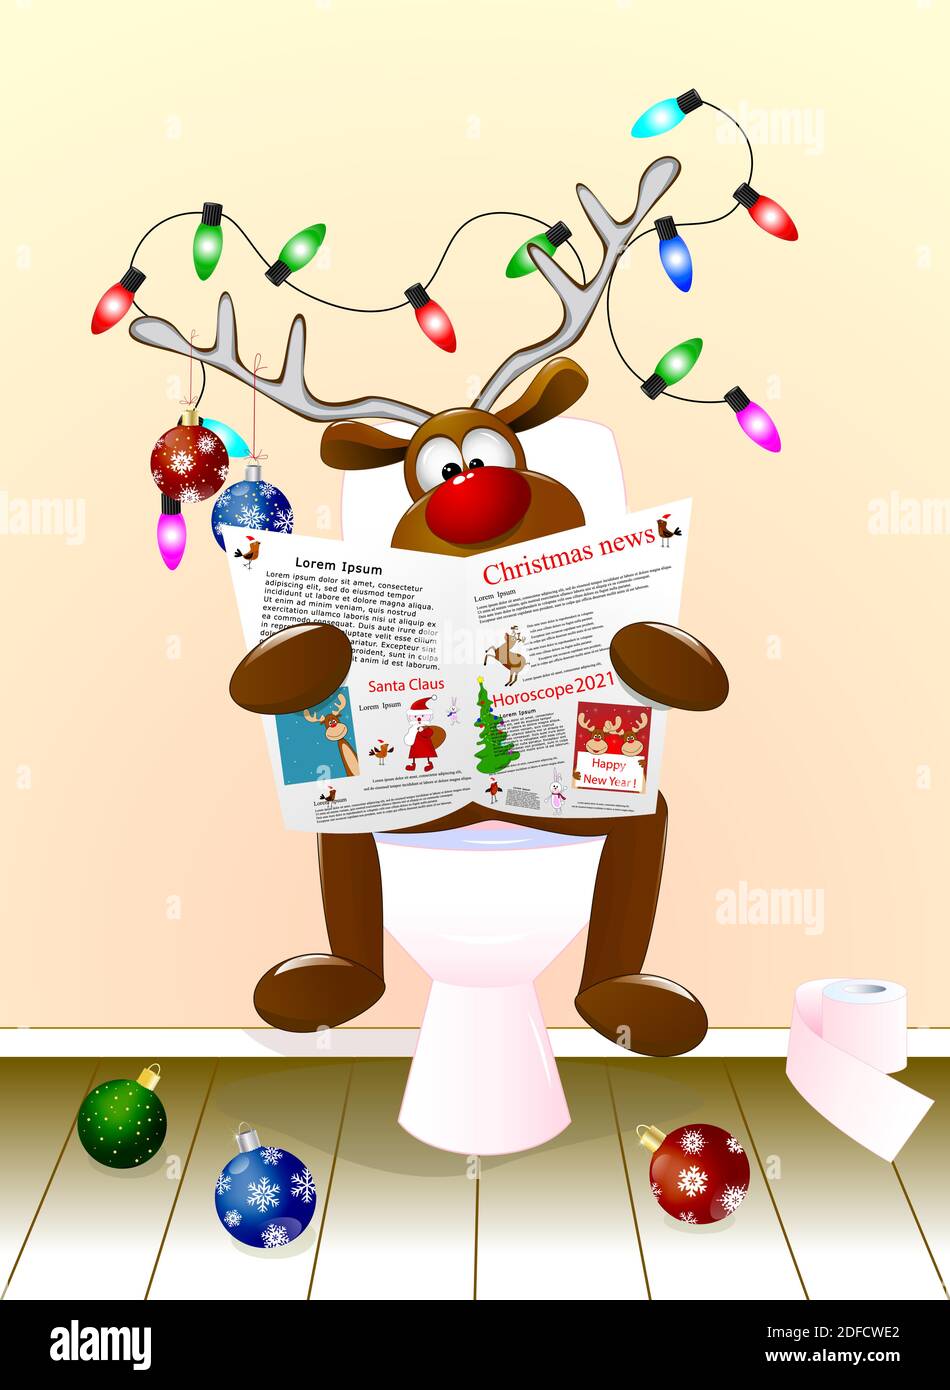 Un cerf de bande dessinée lisant un journal assis sur un bol de toilettes. Les bois sont décorés de boules de Noël et d'une guirlande lumineuse. Noël. Illustration de Vecteur